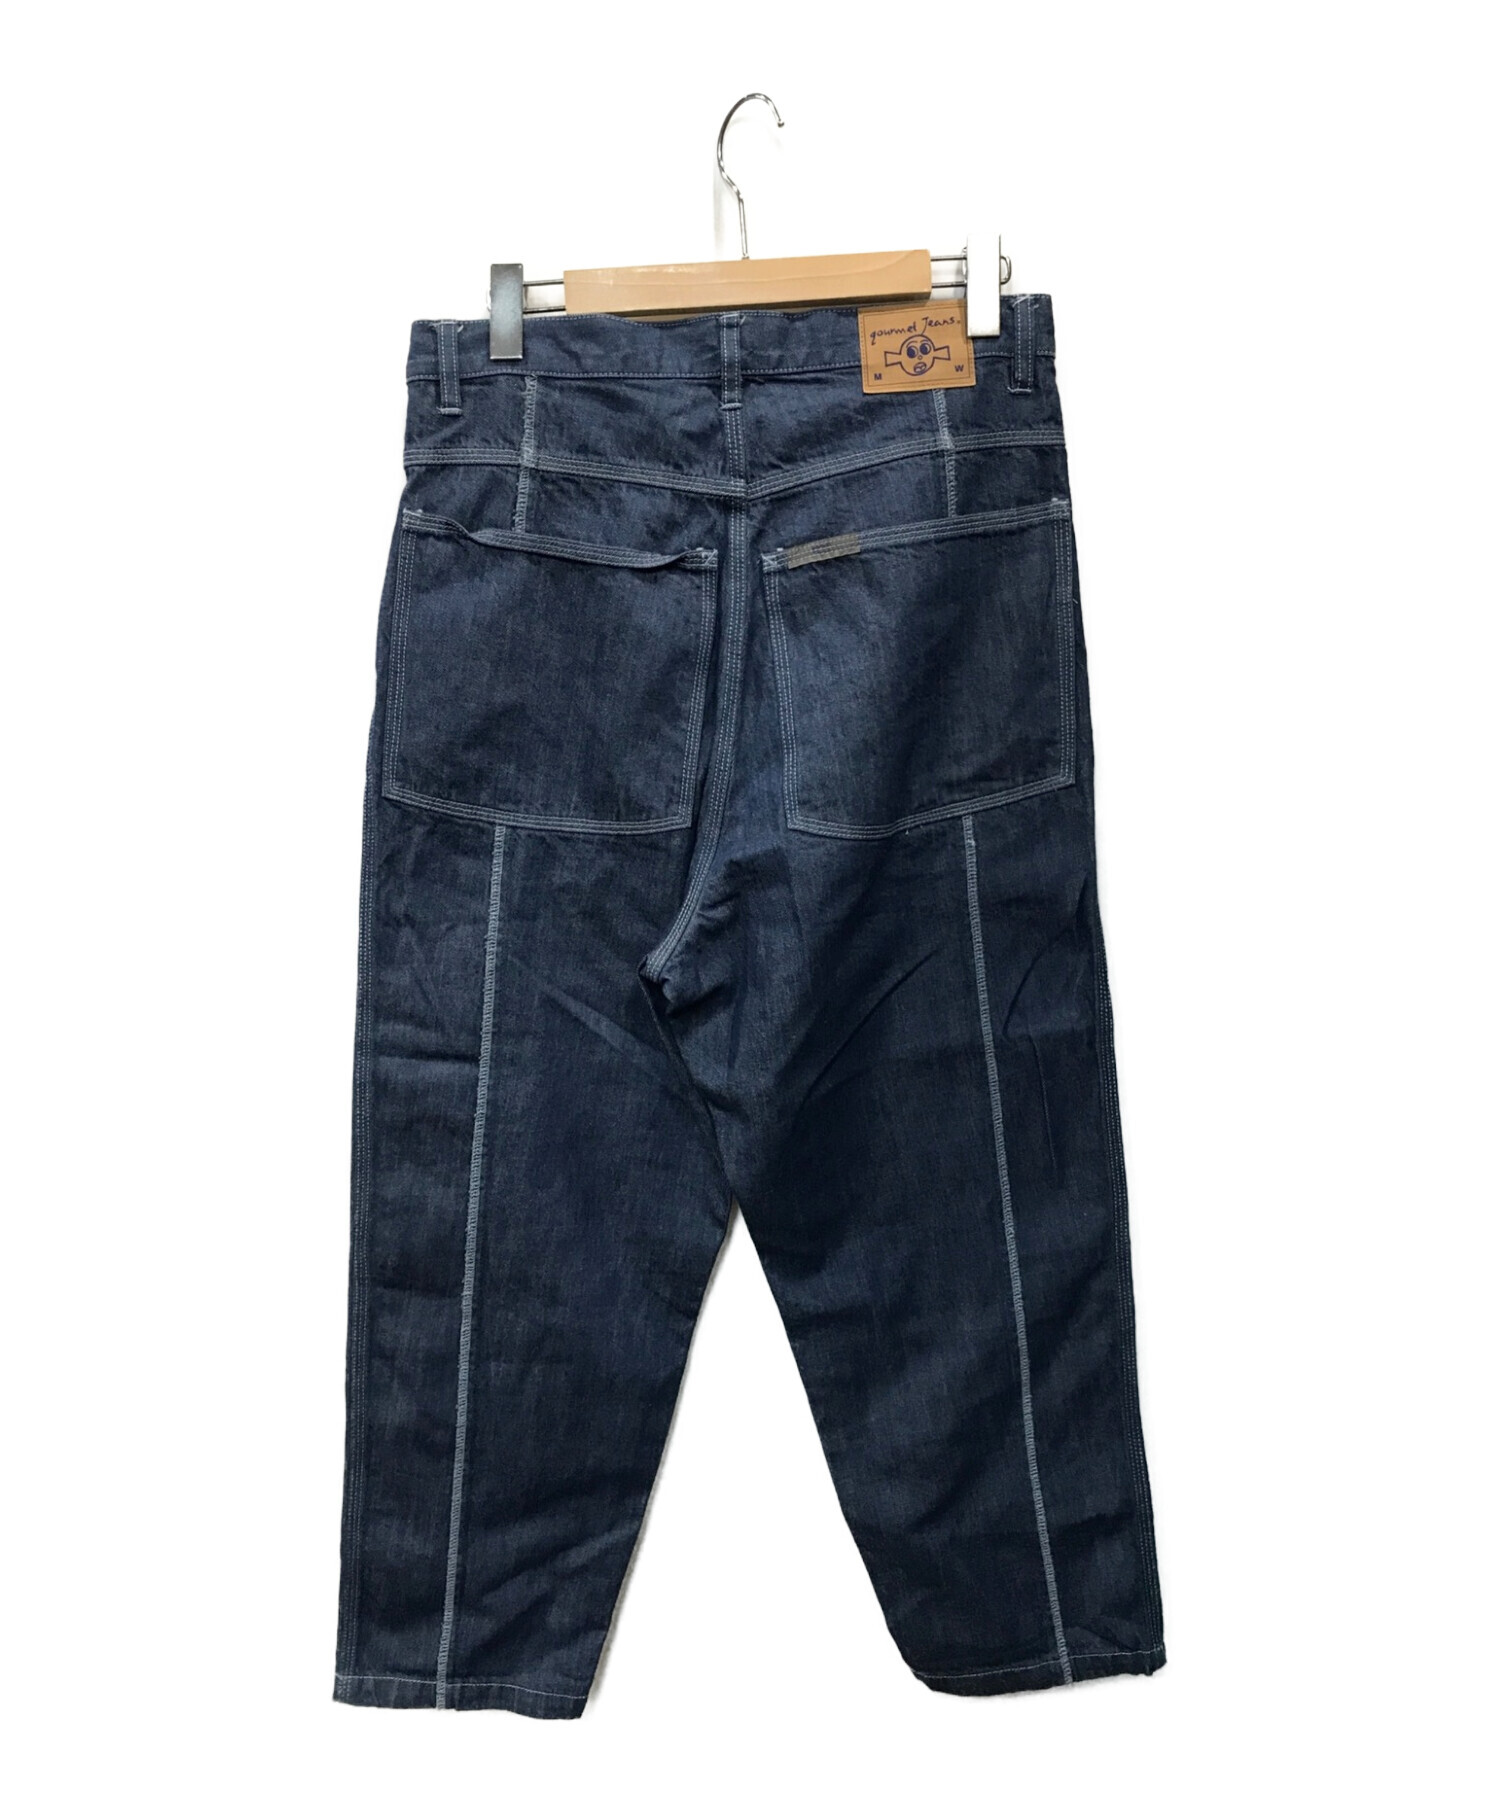 ウエスト45cmgourmet jeans グルメジーンズ Type3/lock stitch